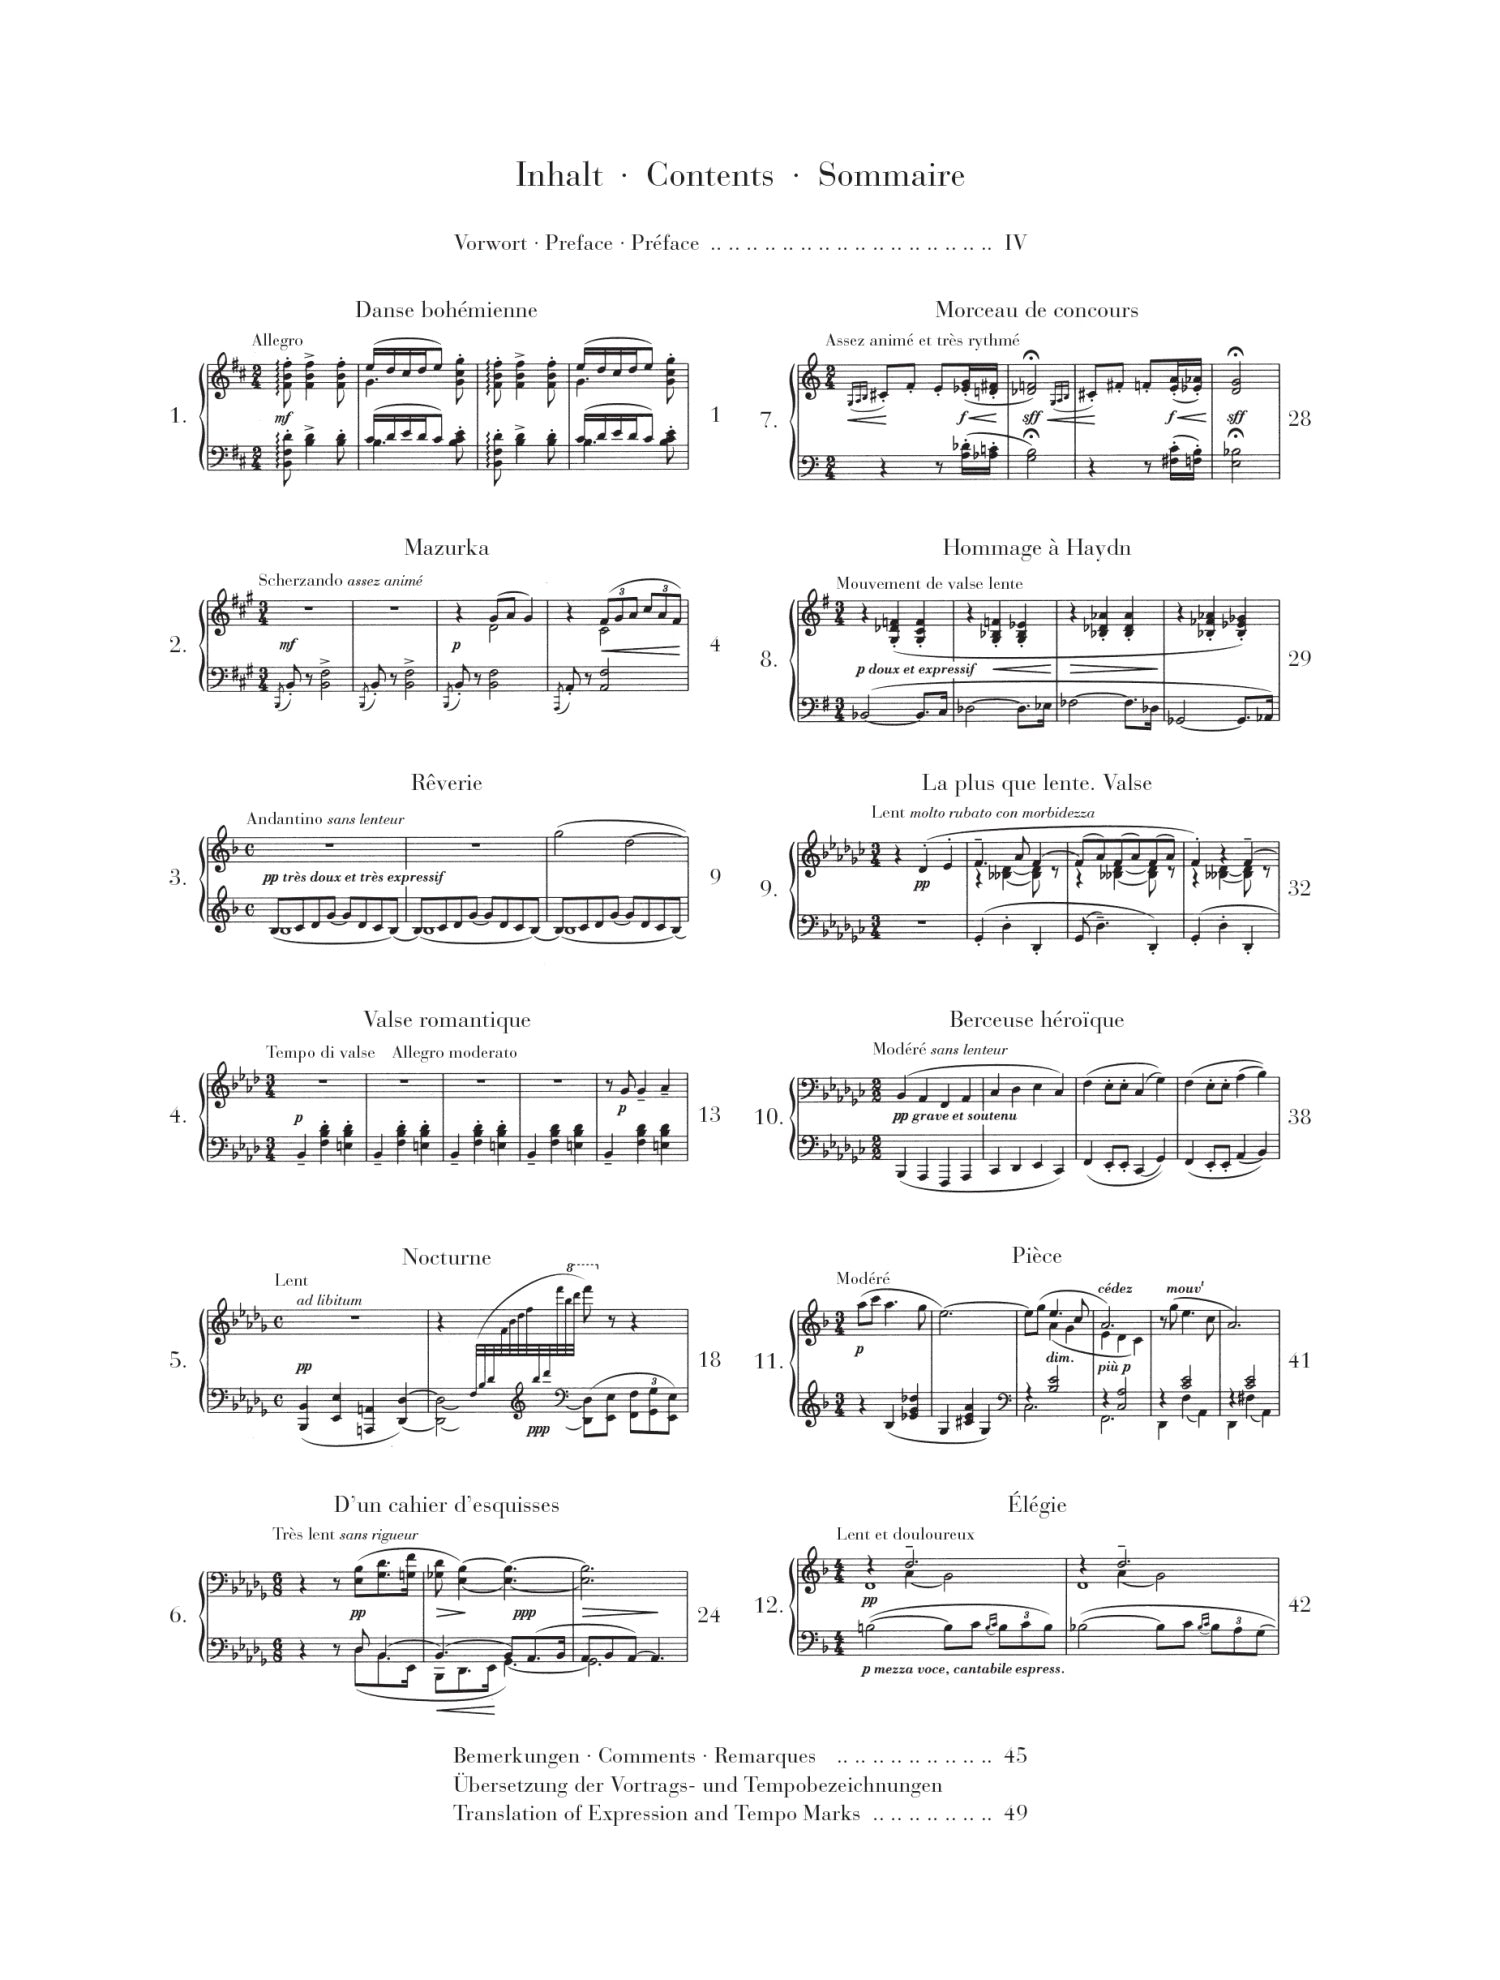 Debussy: Piano Pieces